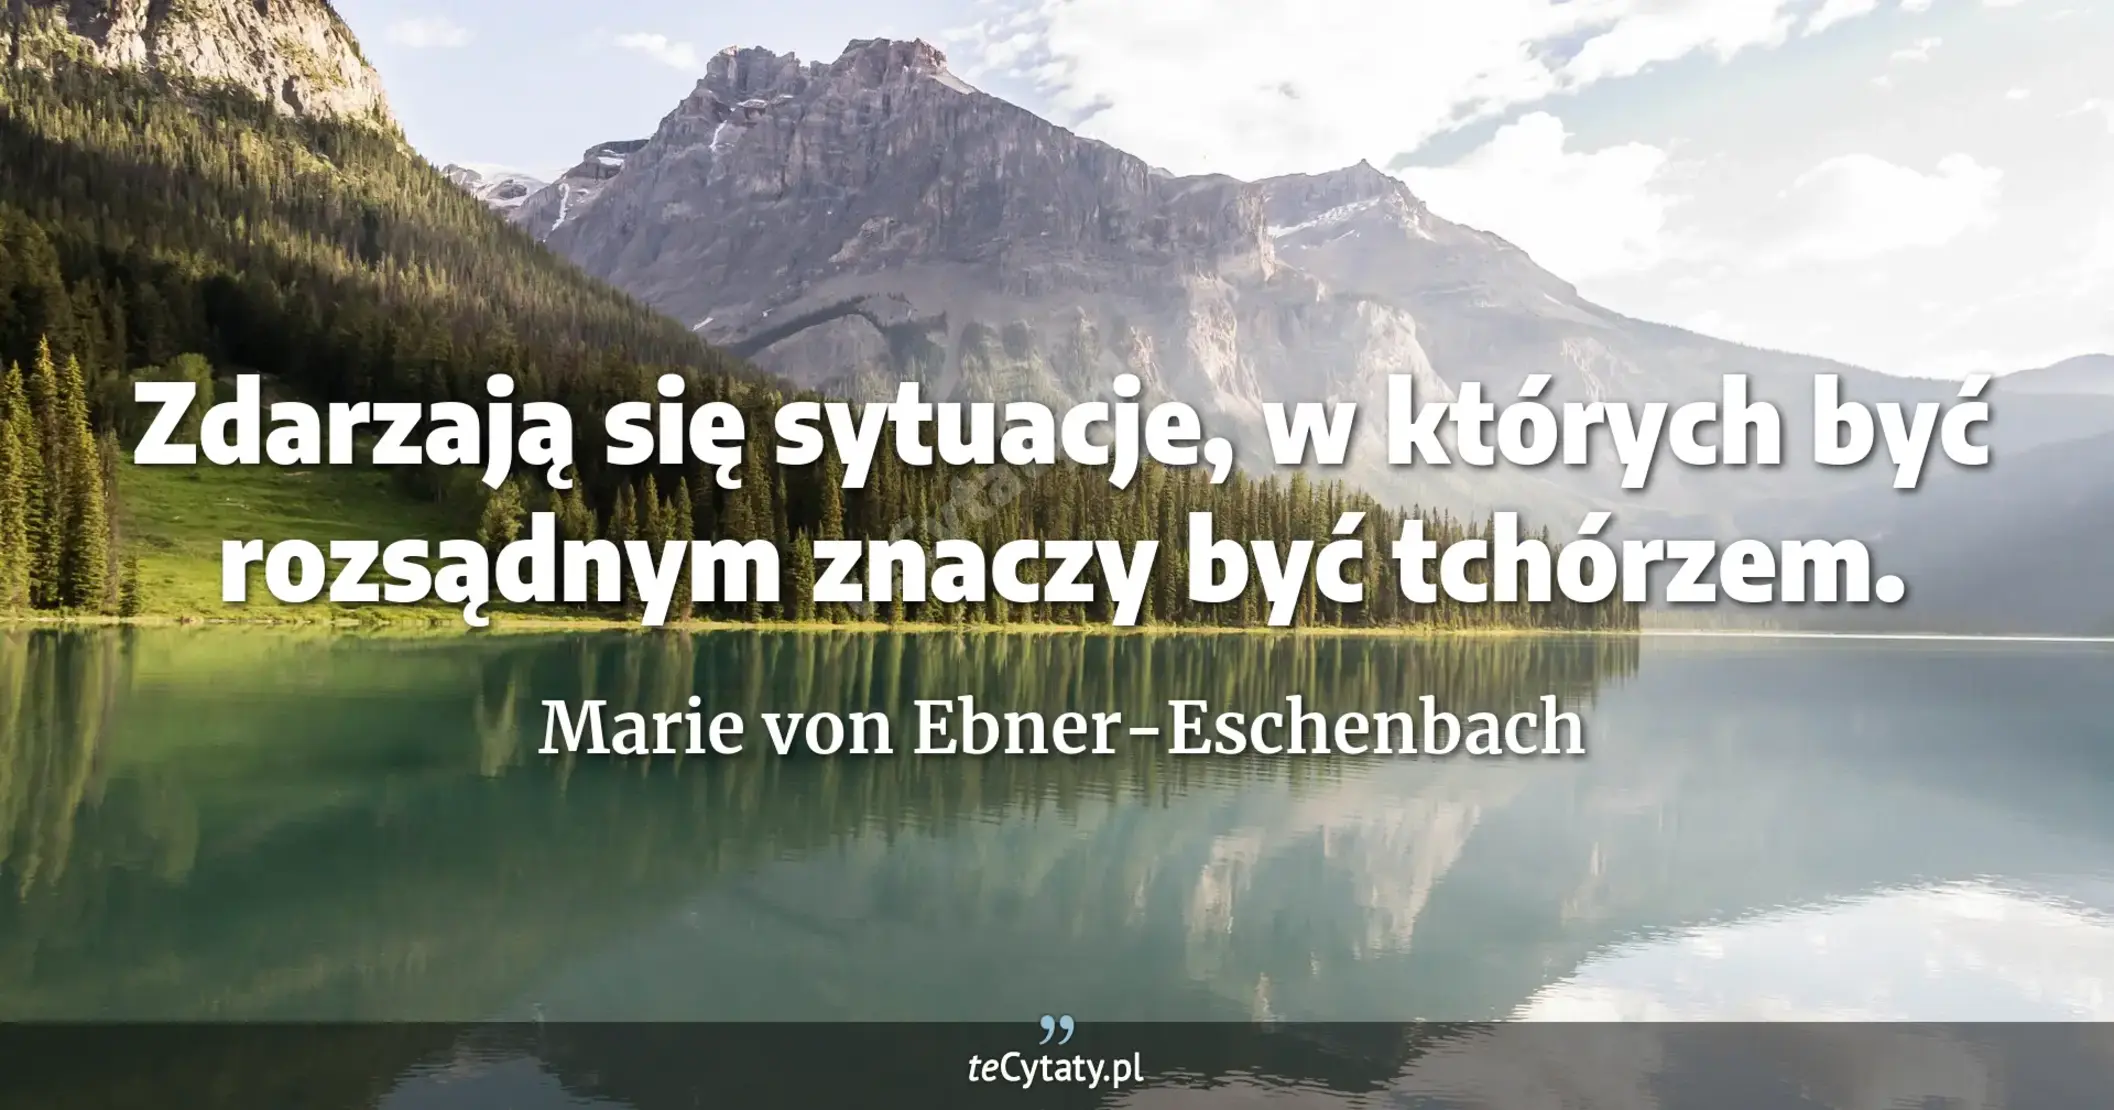 Zdarzają się sytuacje, w których być rozsądnym znaczy być tchórzem. - Marie von Ebner-Eschenbach